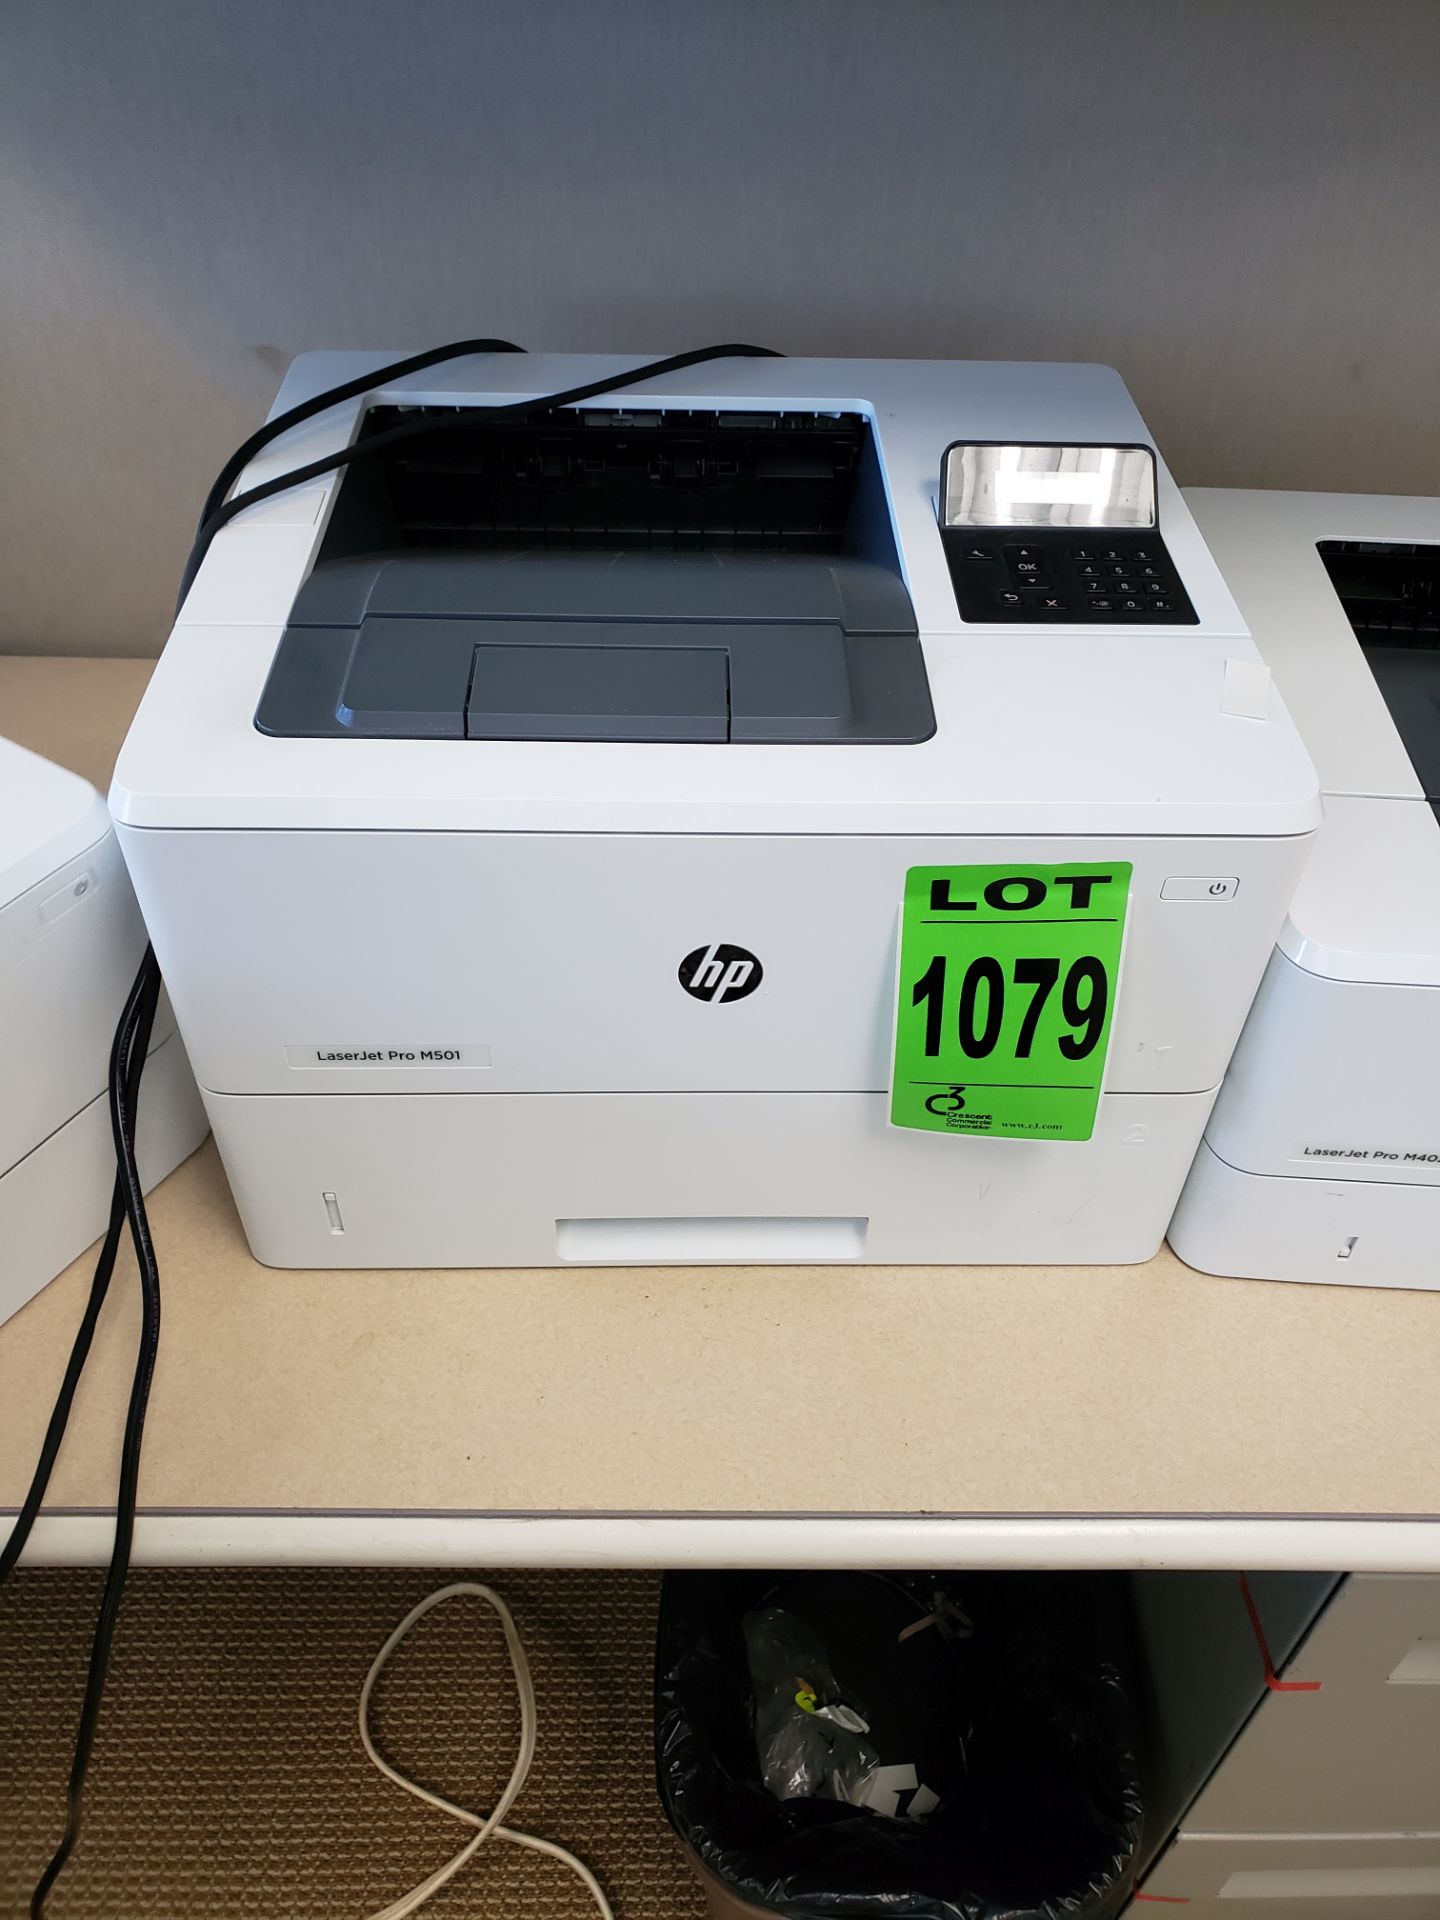 HP mod. LaserJet Pro M501n printer, monochrome, high volume